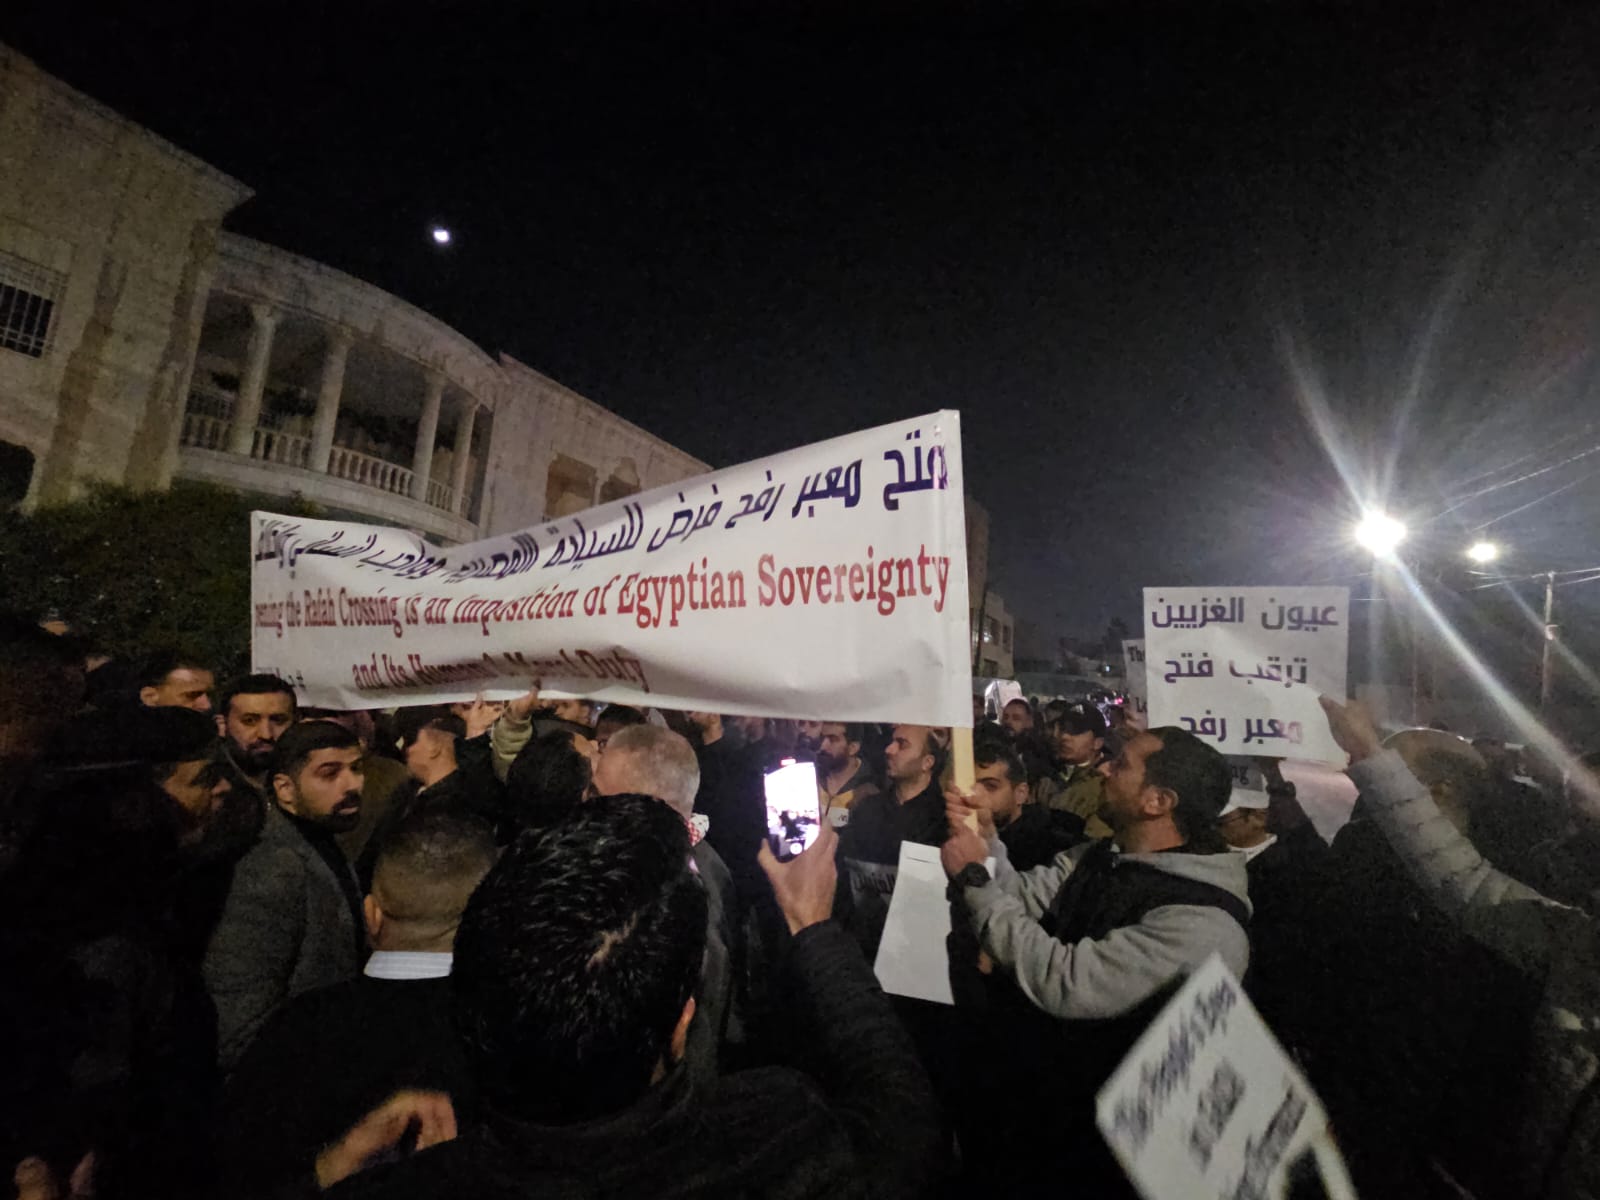 ابناء حي الطفايلة يعتصمون امام السفارة المصرية للمطالبة بفتح معبر رفح - صور